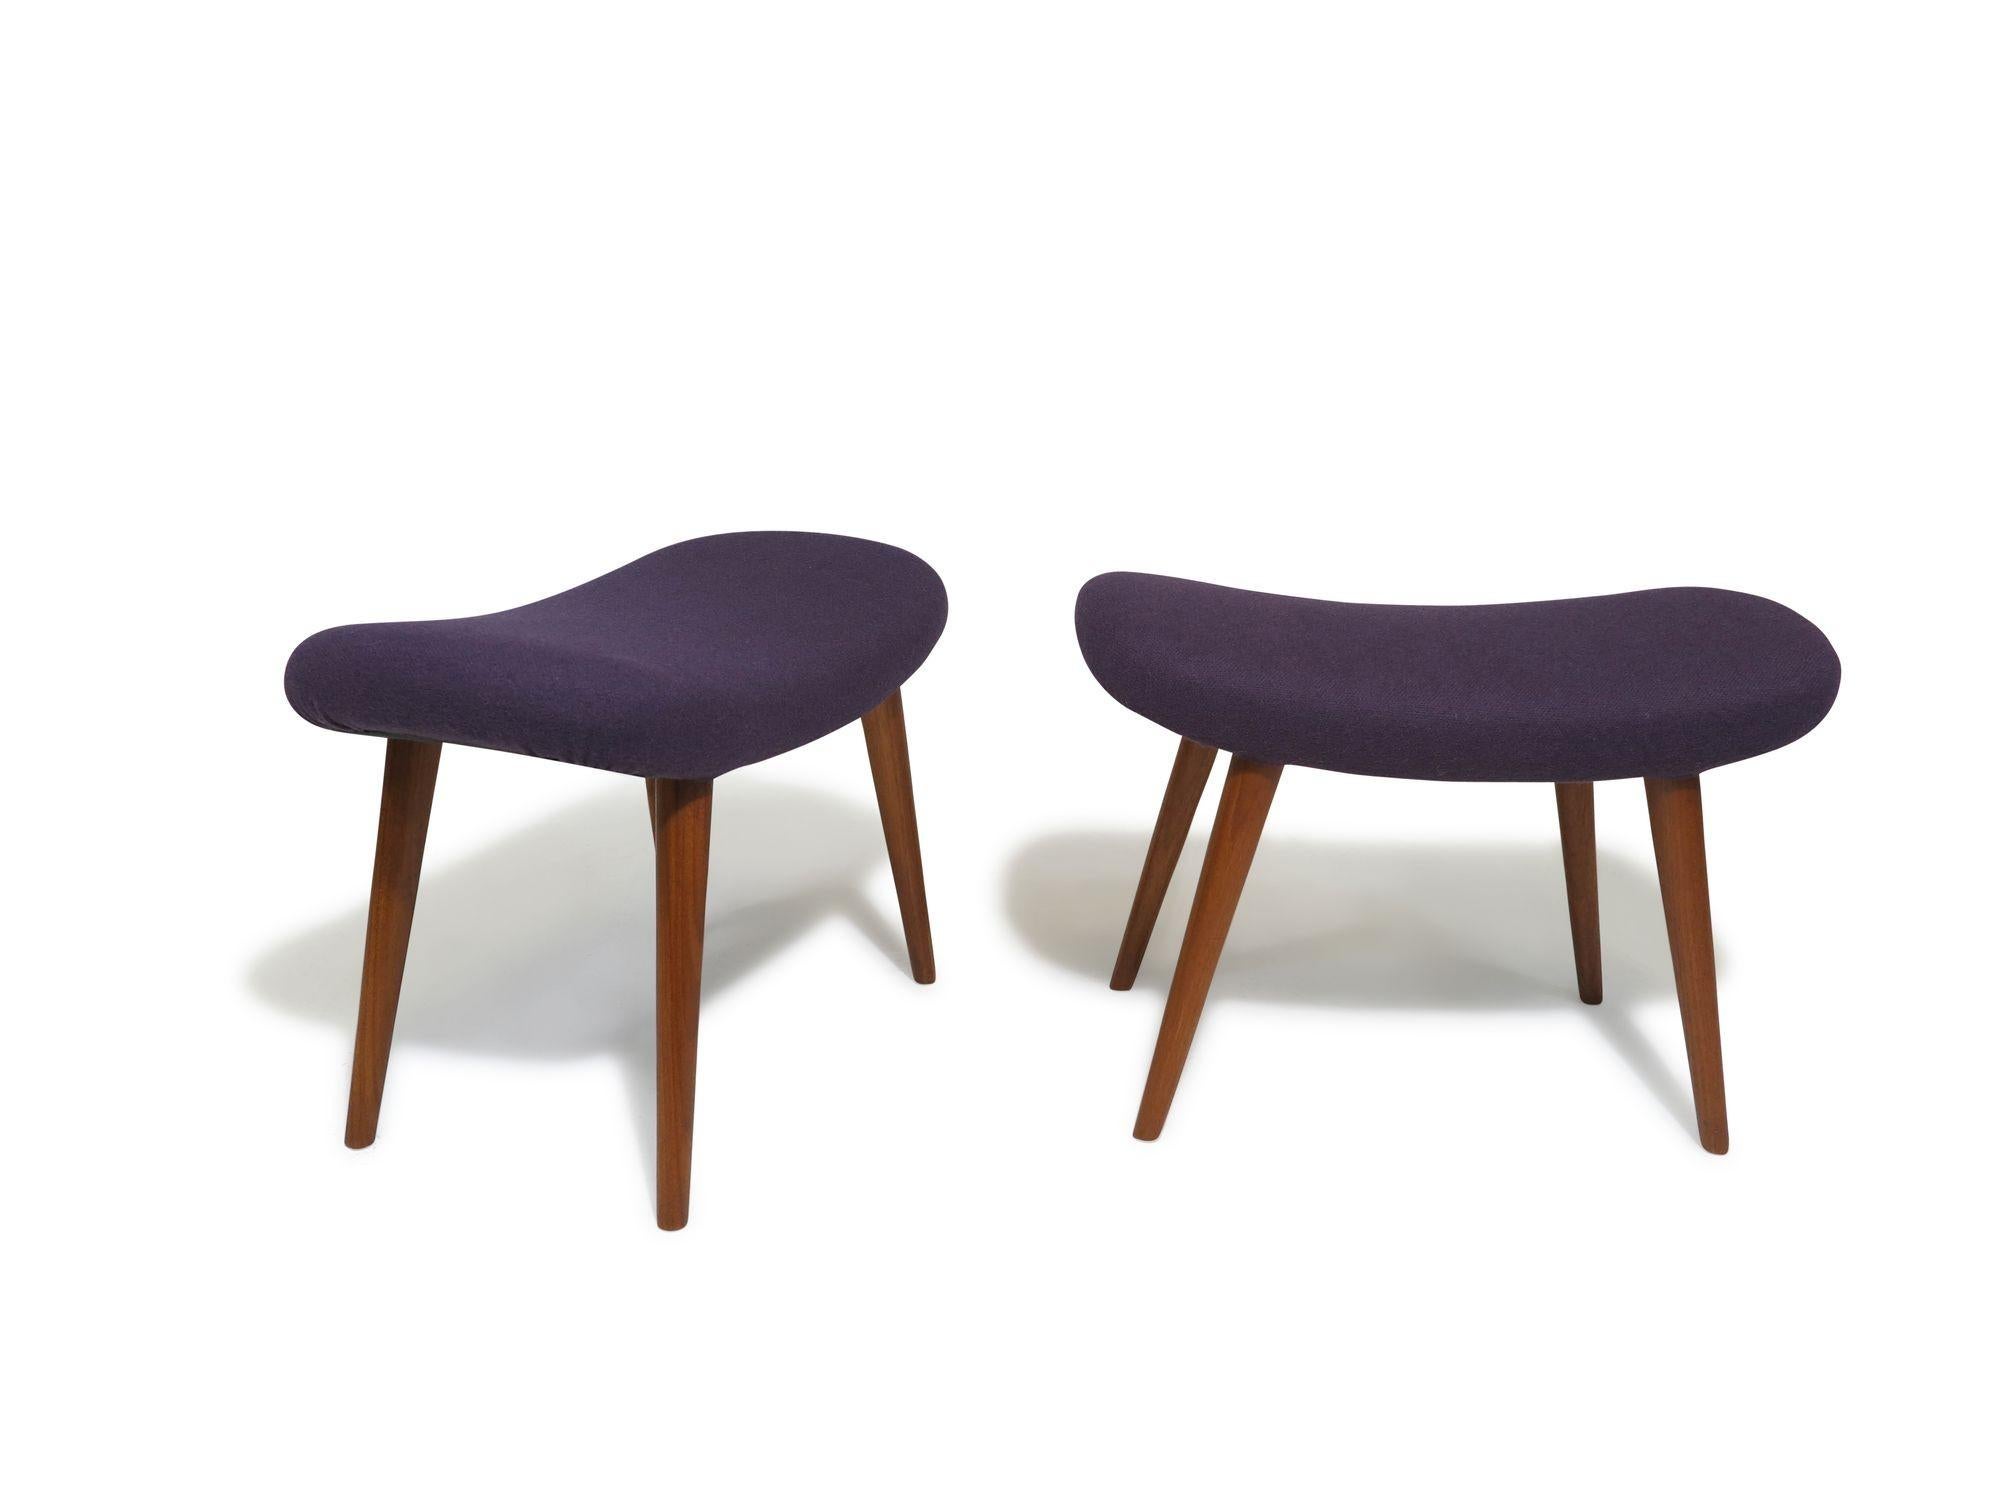 Ottomane aus der Mitte des Jahrhunderts, entworfen von Aksel Bender Madsen 1955, Dänemark. Die ovalen, geschwungenen Sitze stehen auf spitz zulaufenden Teakholzbeinen und sind neu mit lila Wolle gepolstert. Sie können als Ottomane oder Hocker